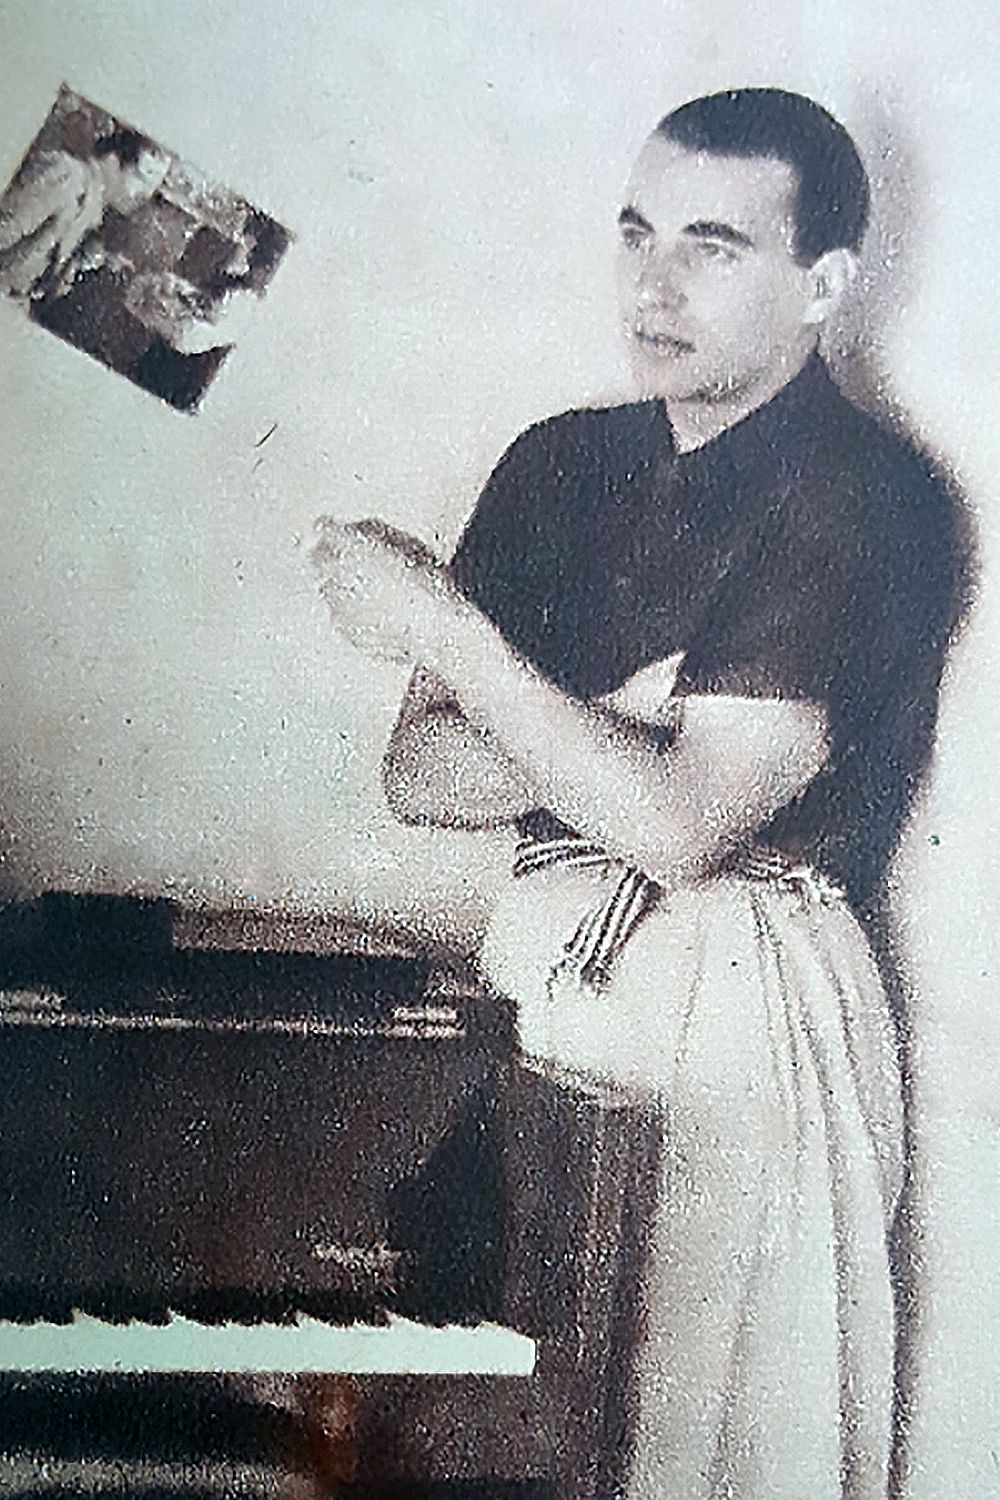 Lucio Demare with his piano.